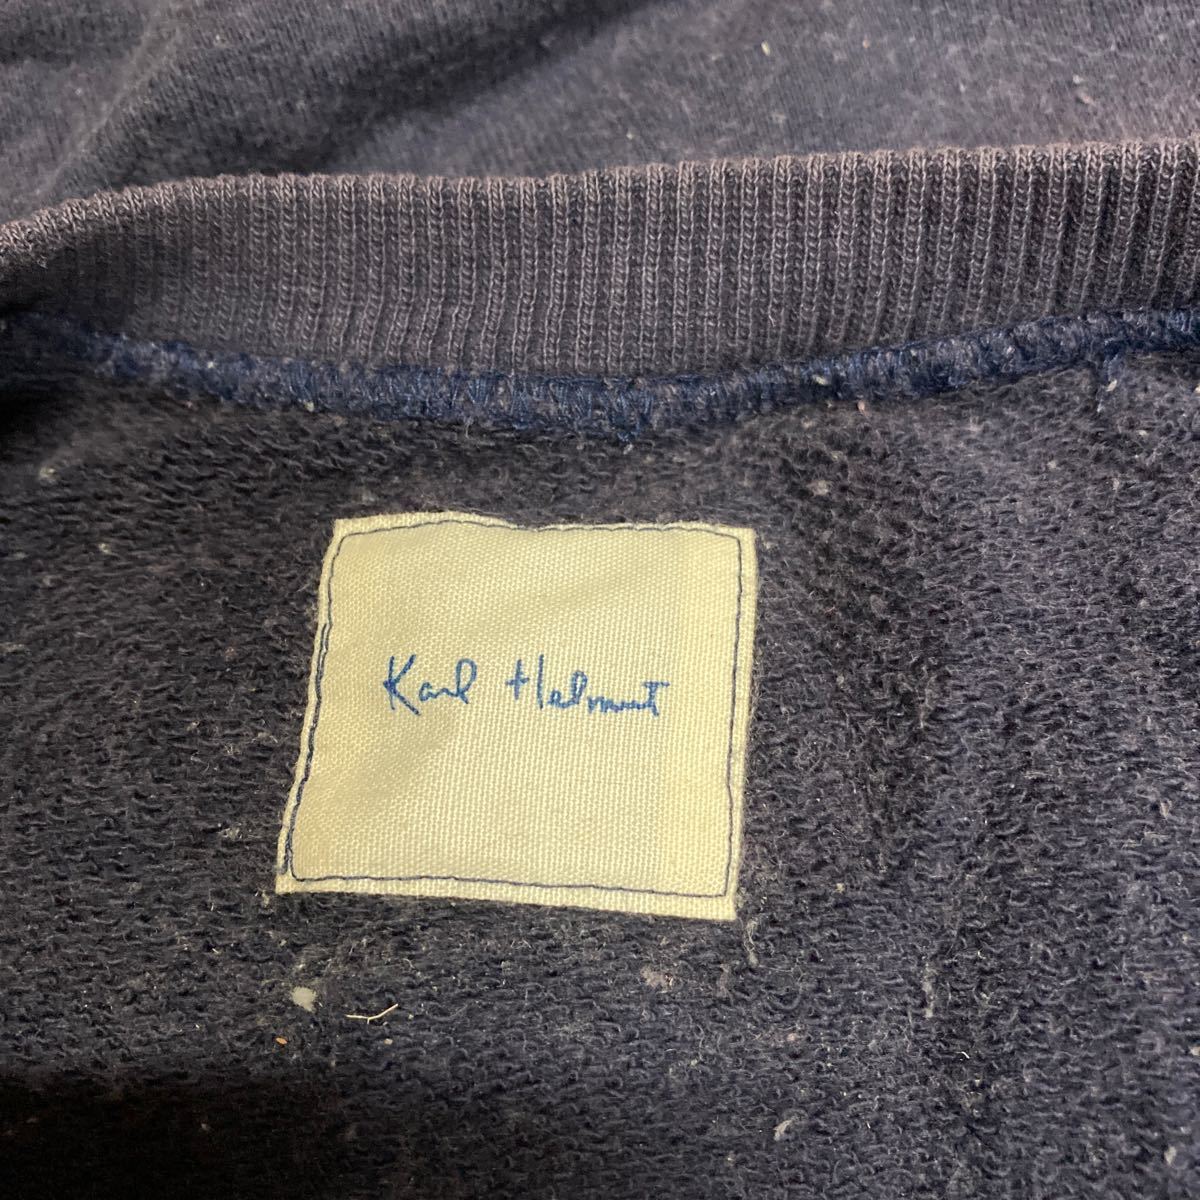  Karl hell m sweat sweatshirt size L